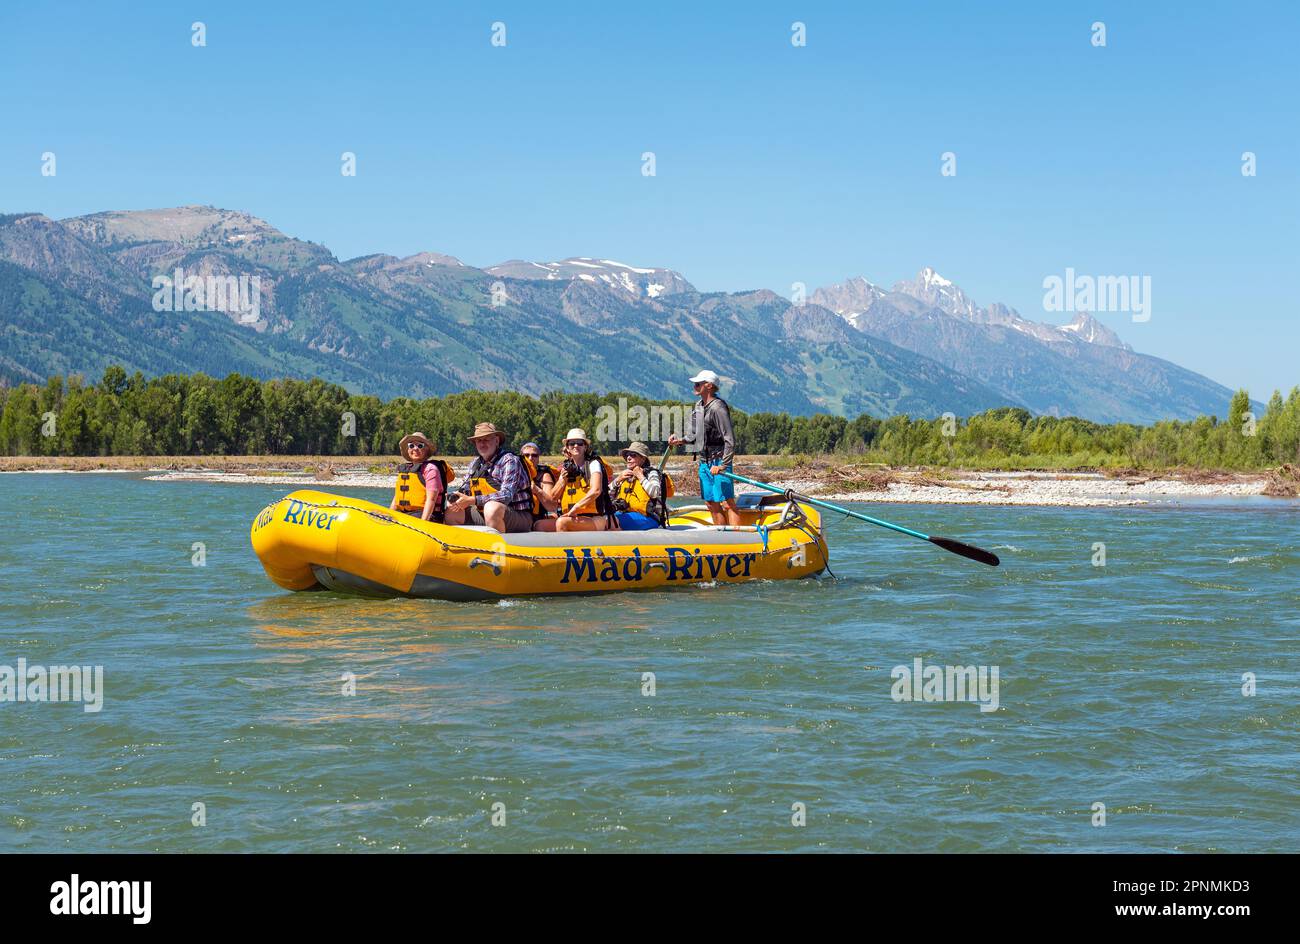 Touristes en bateau gonflable rigide sur Snake River rafting pittoresque avec la chaîne de montagnes de Grand Teton, Wyoming, Etats-Unis. Banque D'Images